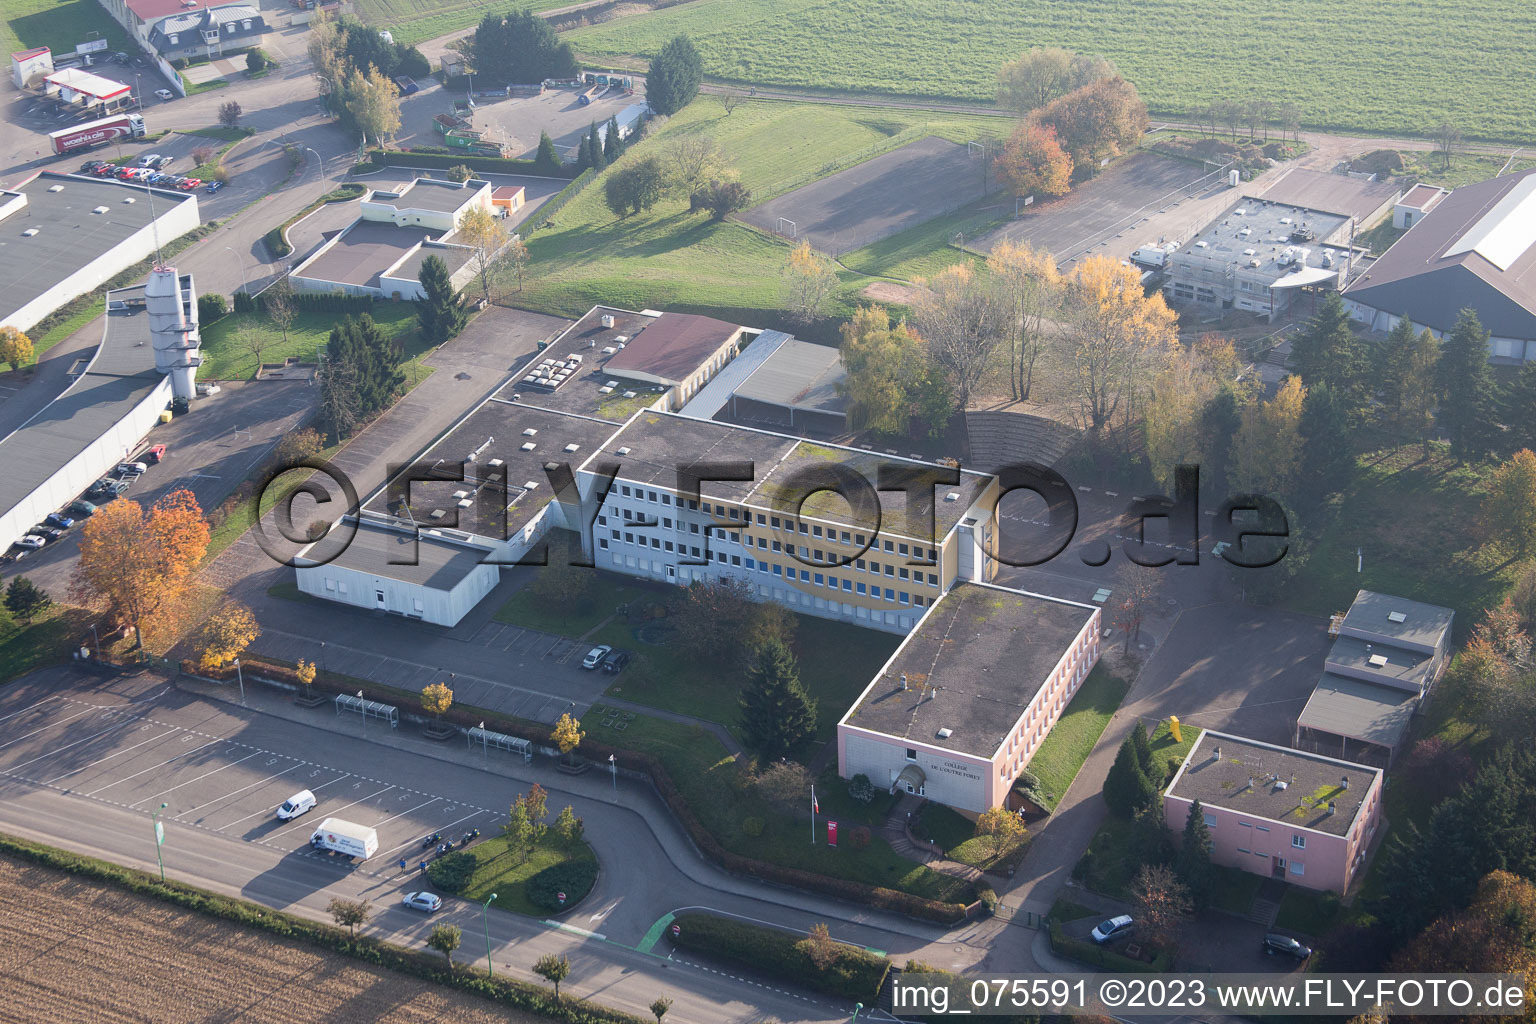 Soultz-sous-Forêts im Bundesland Bas-Rhin, Frankreich von der Drohne aus gesehen